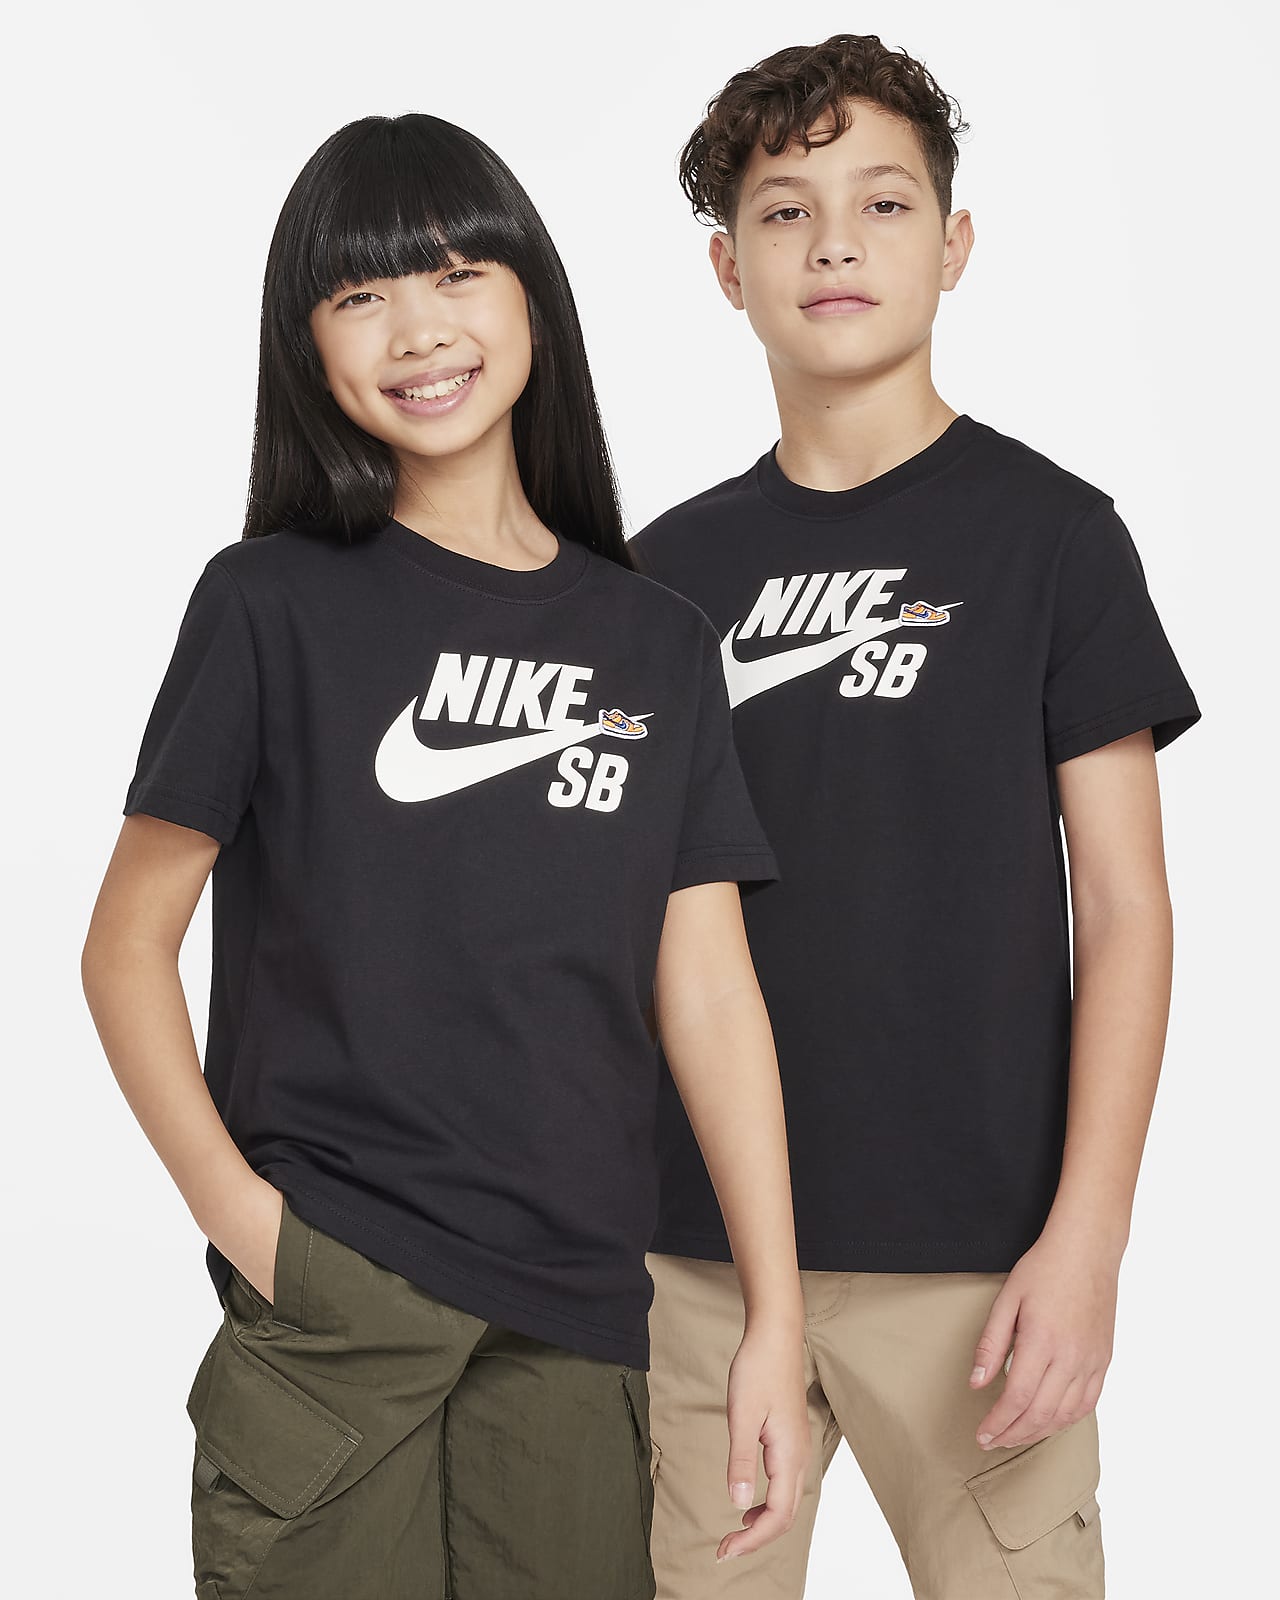 Tričko Nike SB pro větší děti